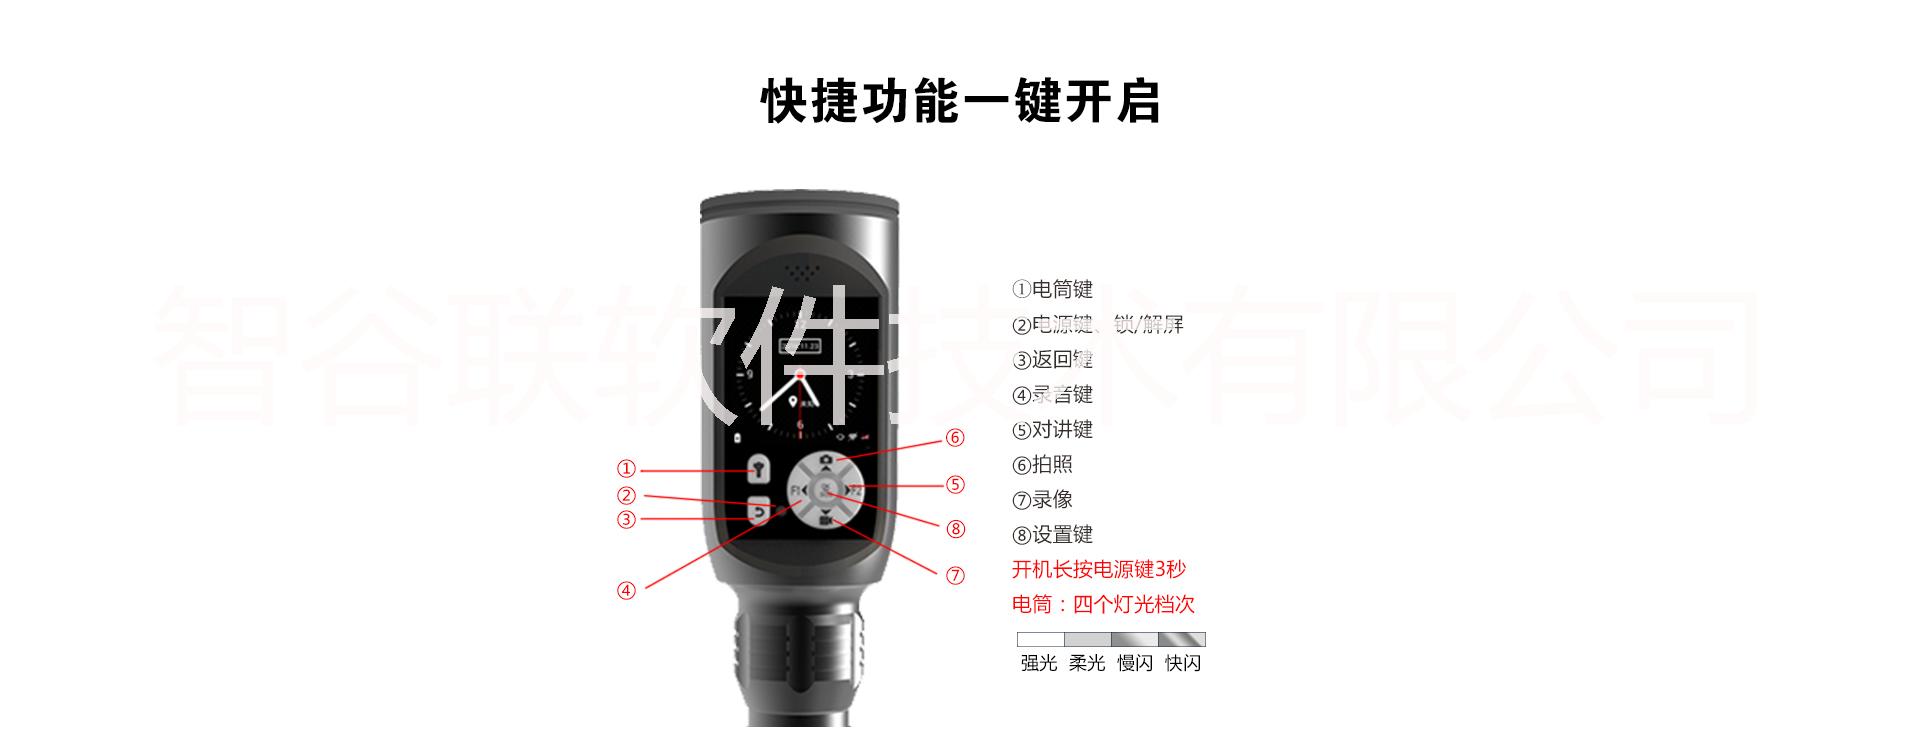 深圳直销智能多功能LED手电筒视频对讲拍照录音携带方便